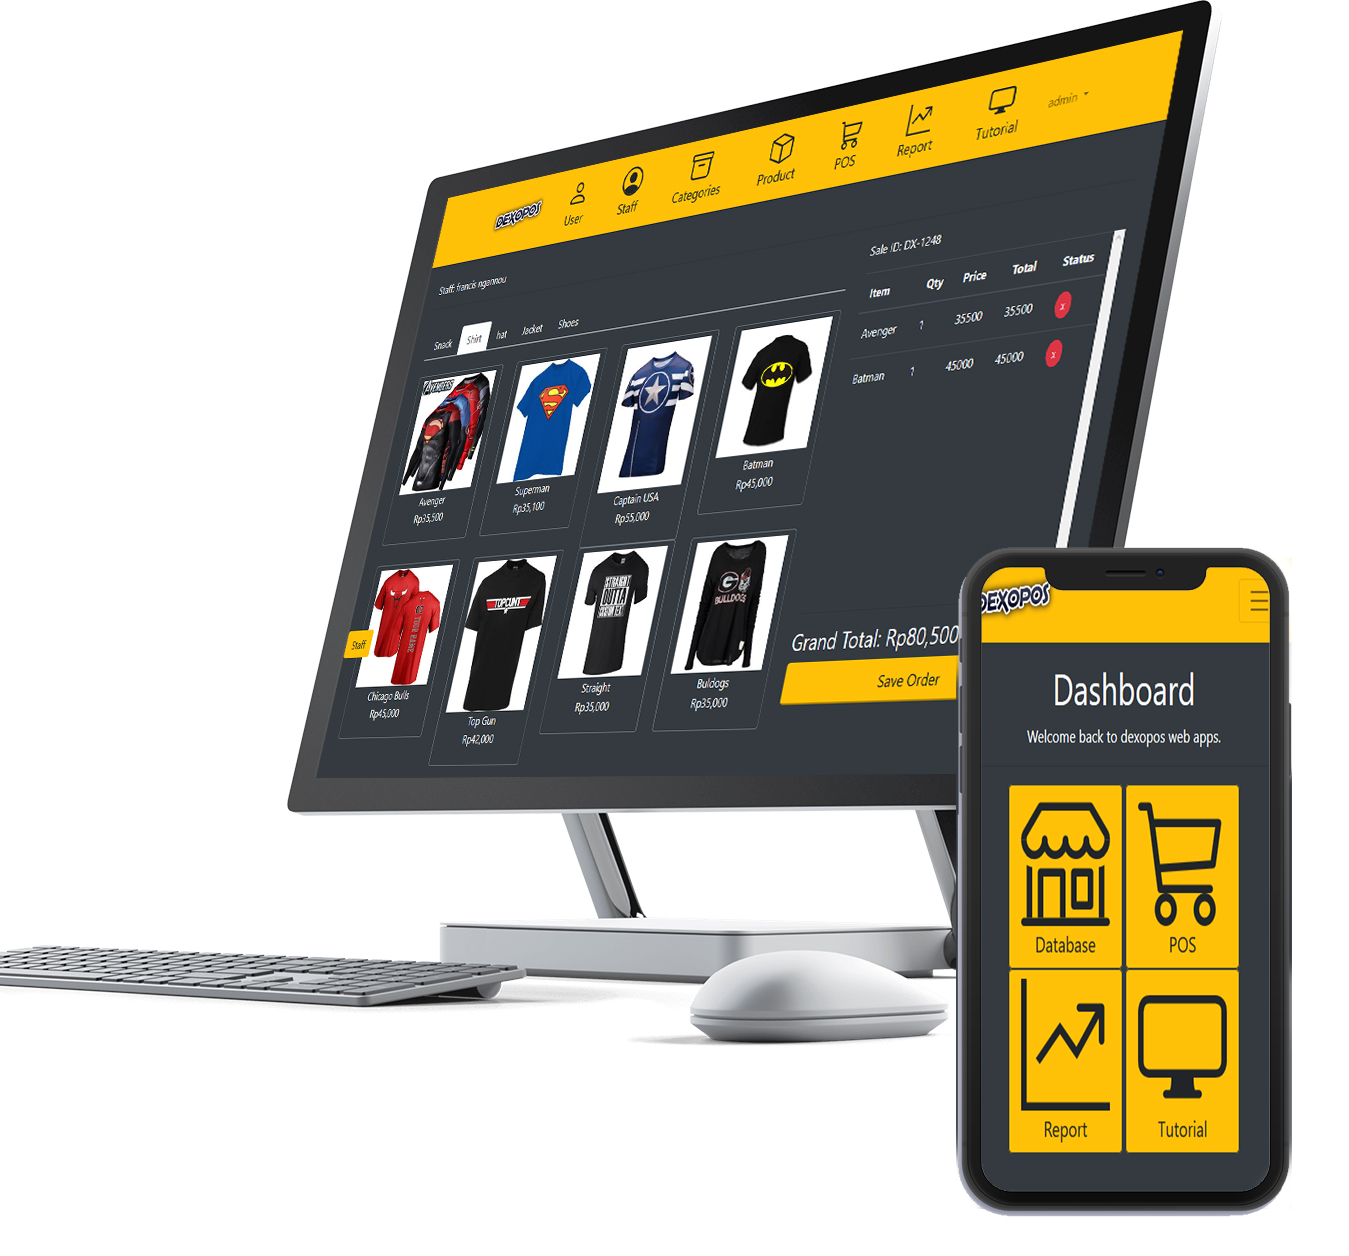 Aplikasi toko online kasir dexopos full dengan penjualan gambar foto produk